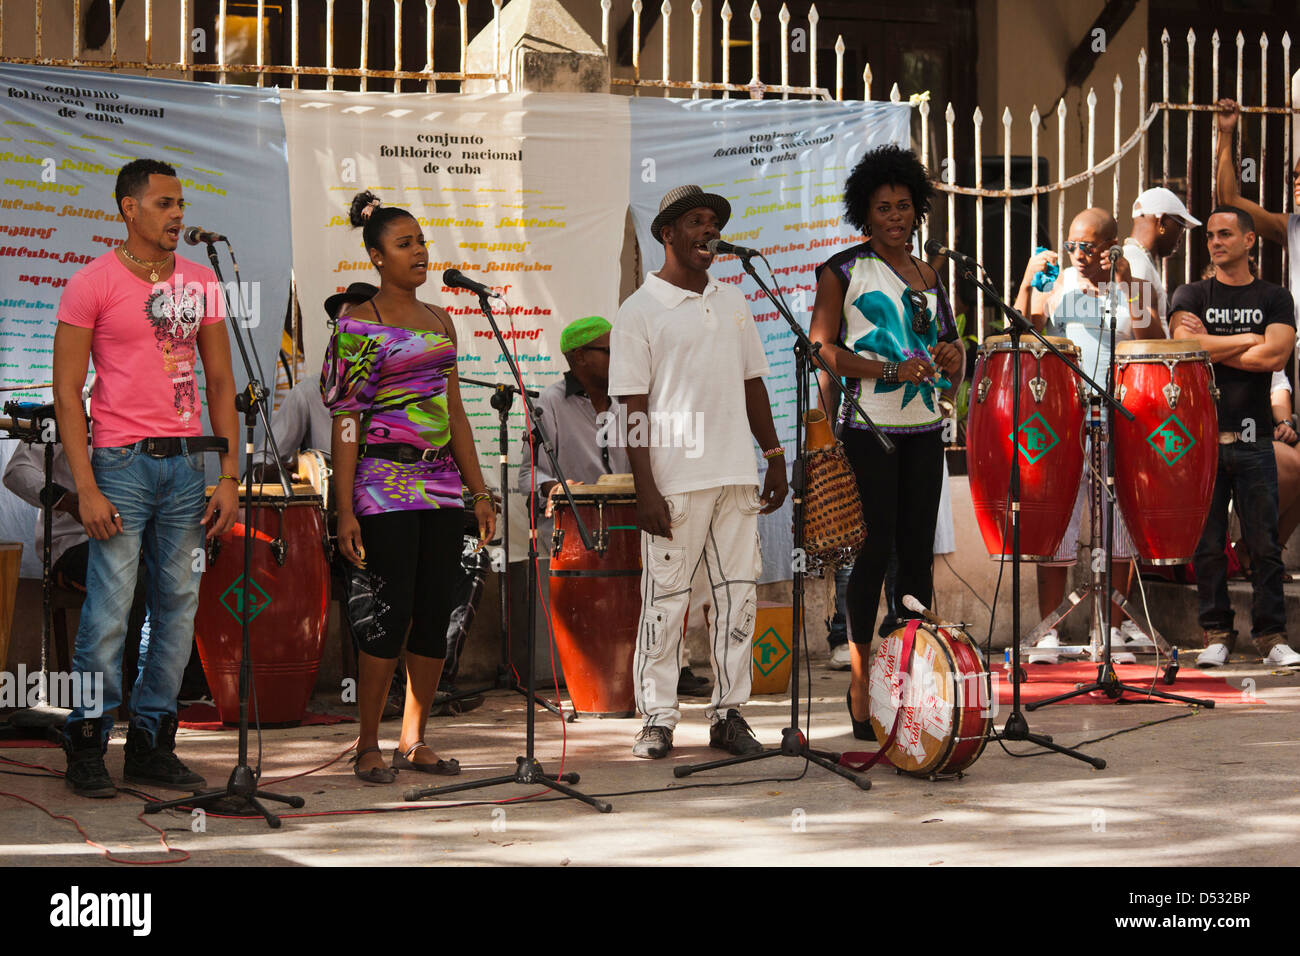 Cuba, La Havane, Vedado, Conjunto Folklorico Nacional, la foule à l'Sabado de rumba dance show, les chanteurs. Banque D'Images